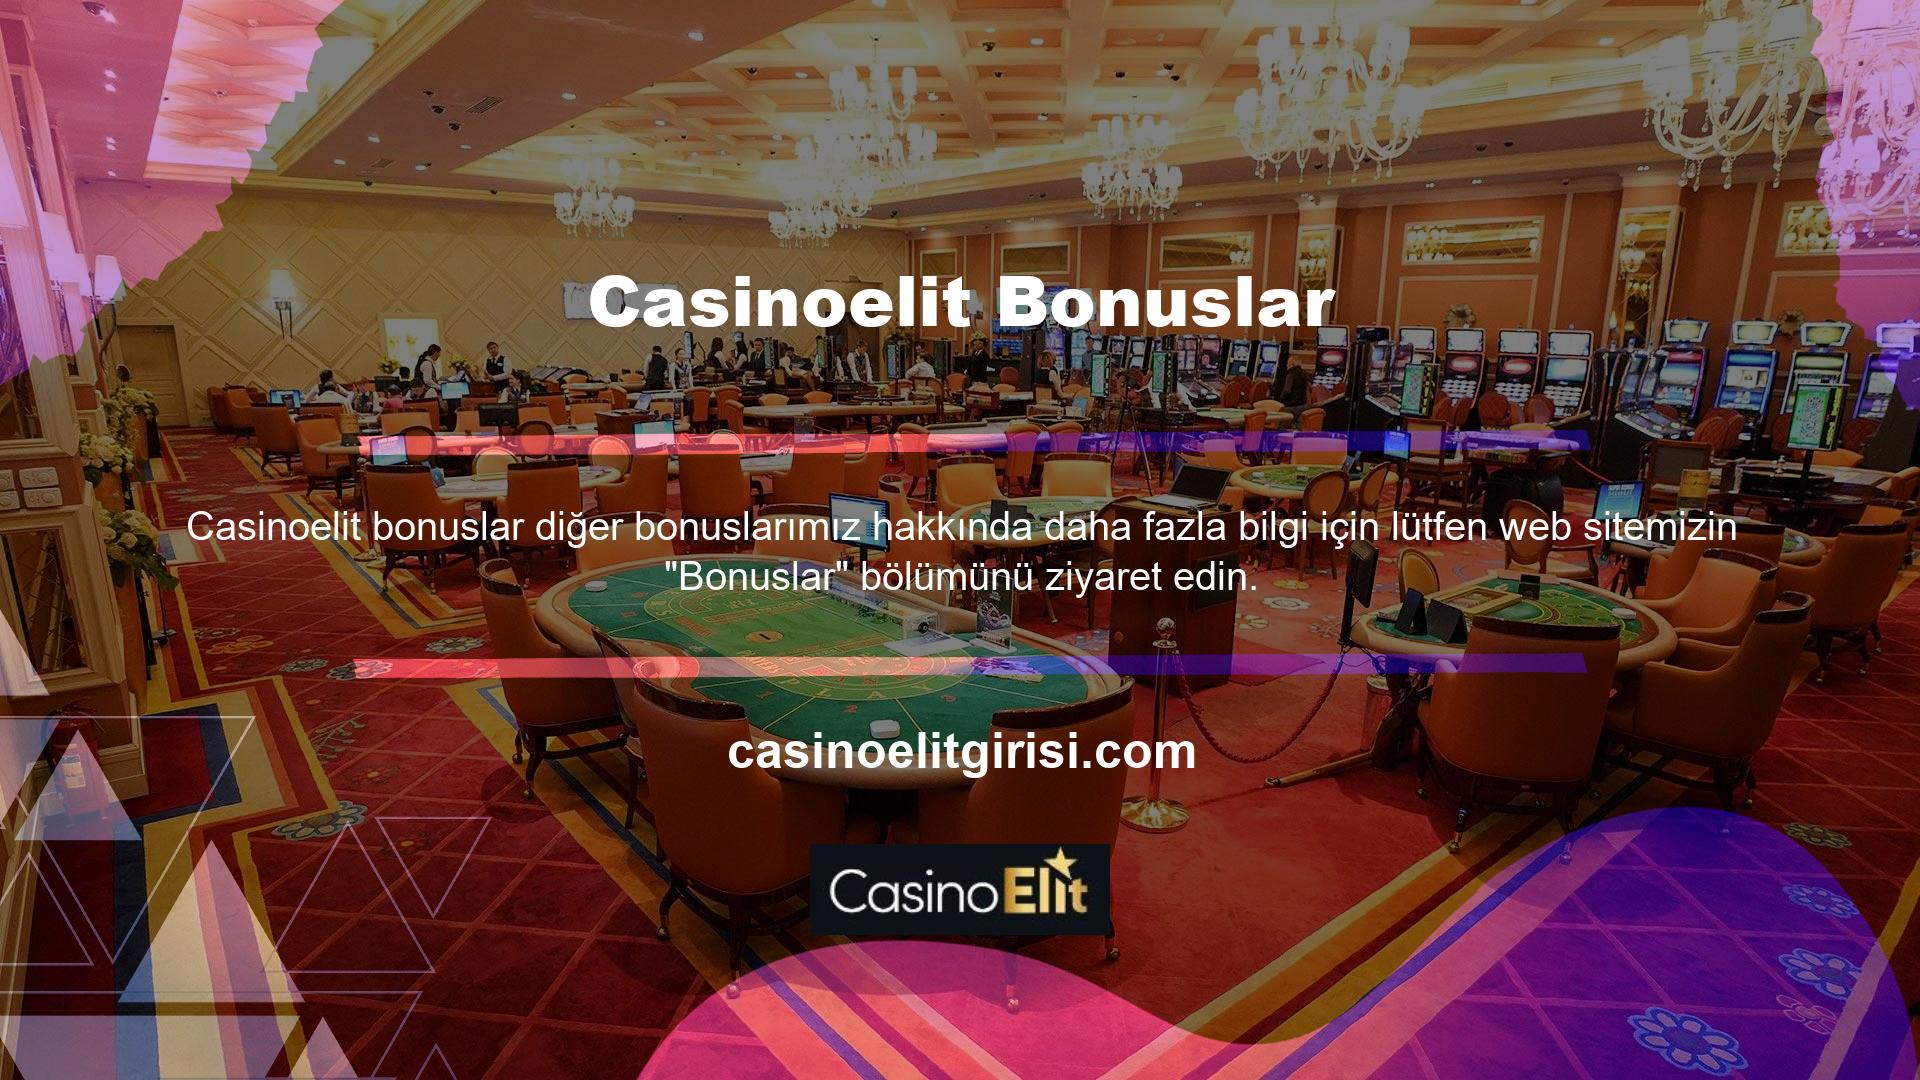 Gördüğünüz gibi Casinoelit bonusları ve promosyonları, bahis tutkunlarının ilgisini çekmek için bir veya daha fazla bahis bonusu sunan sitelerle sınırlı değildir